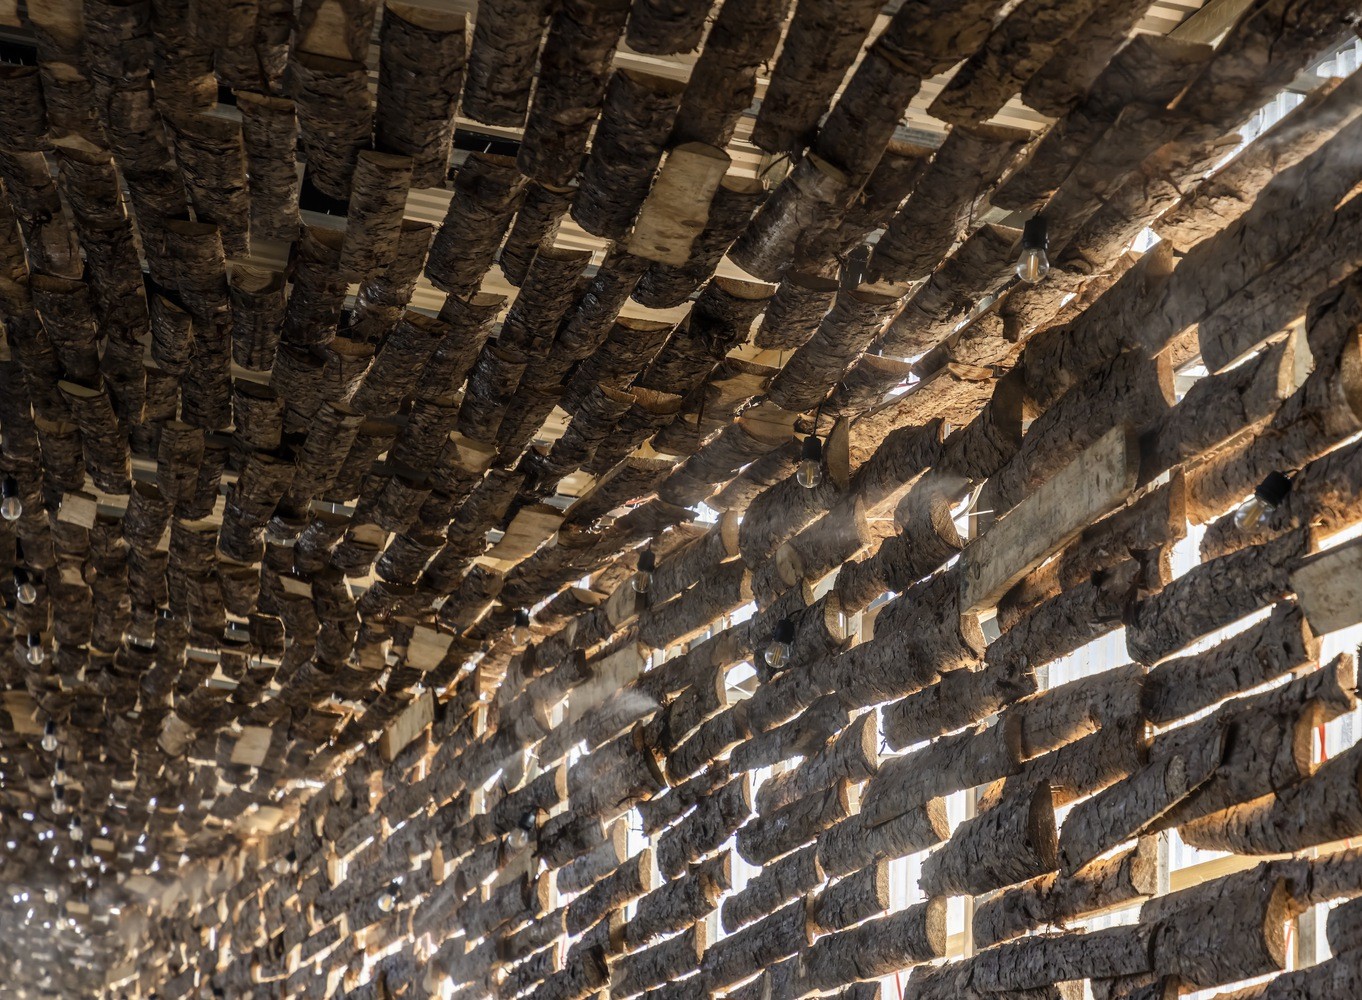 Chiêm ngưỡng nhà hàng dùng nghìn thanh gỗ làm mái được báo nước ngoài đưa tin